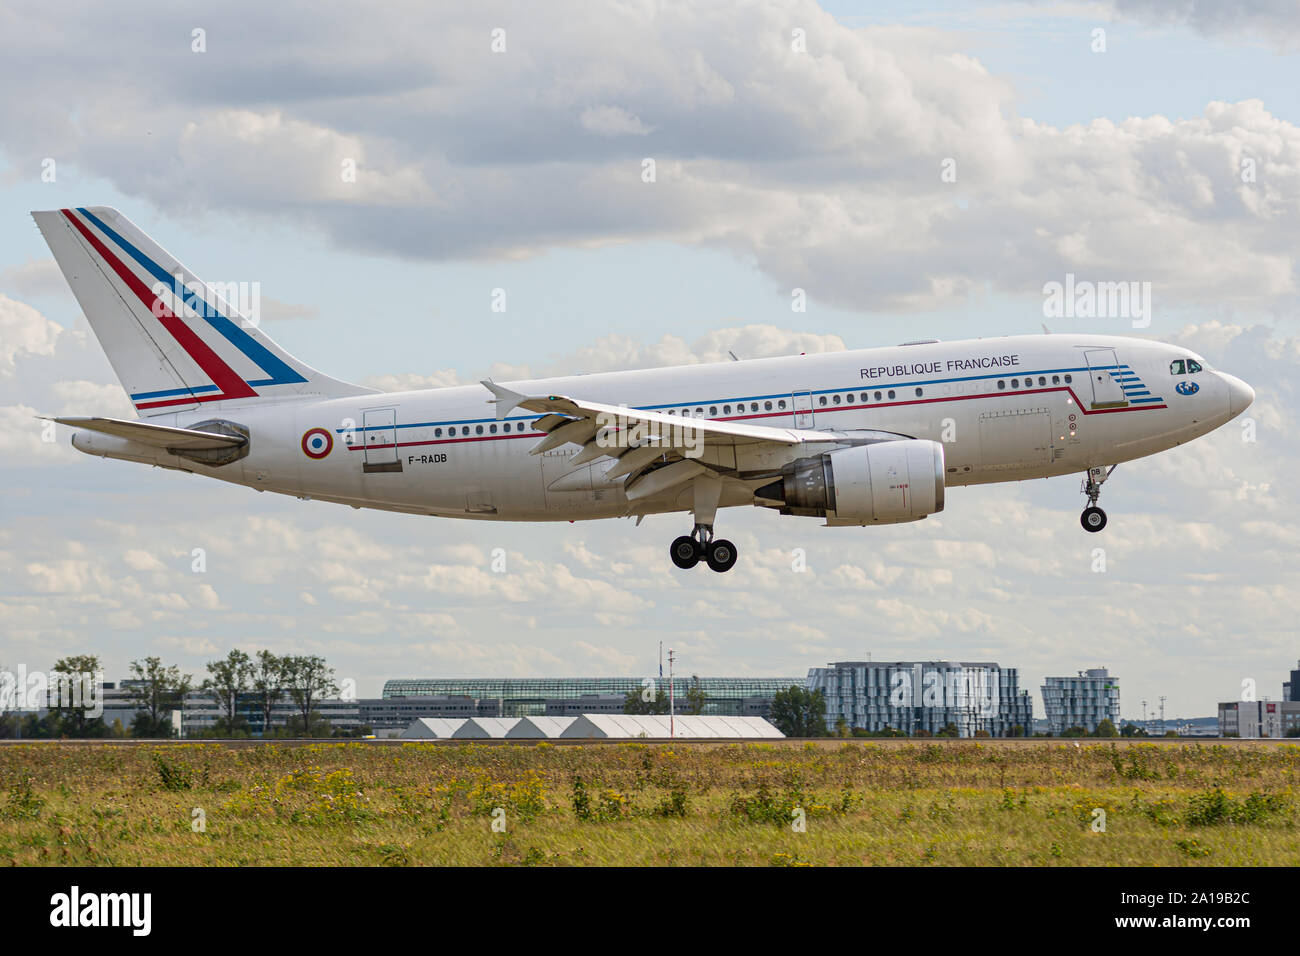 F-RADB, 23 septembre 2019, l'Airbus A310-304-422 atterrissage à l'aéroport Paris Roissy Charles de Gaulle à la fin de vol Cotam CTM1072 à partir de Solenzara. Banque D'Images